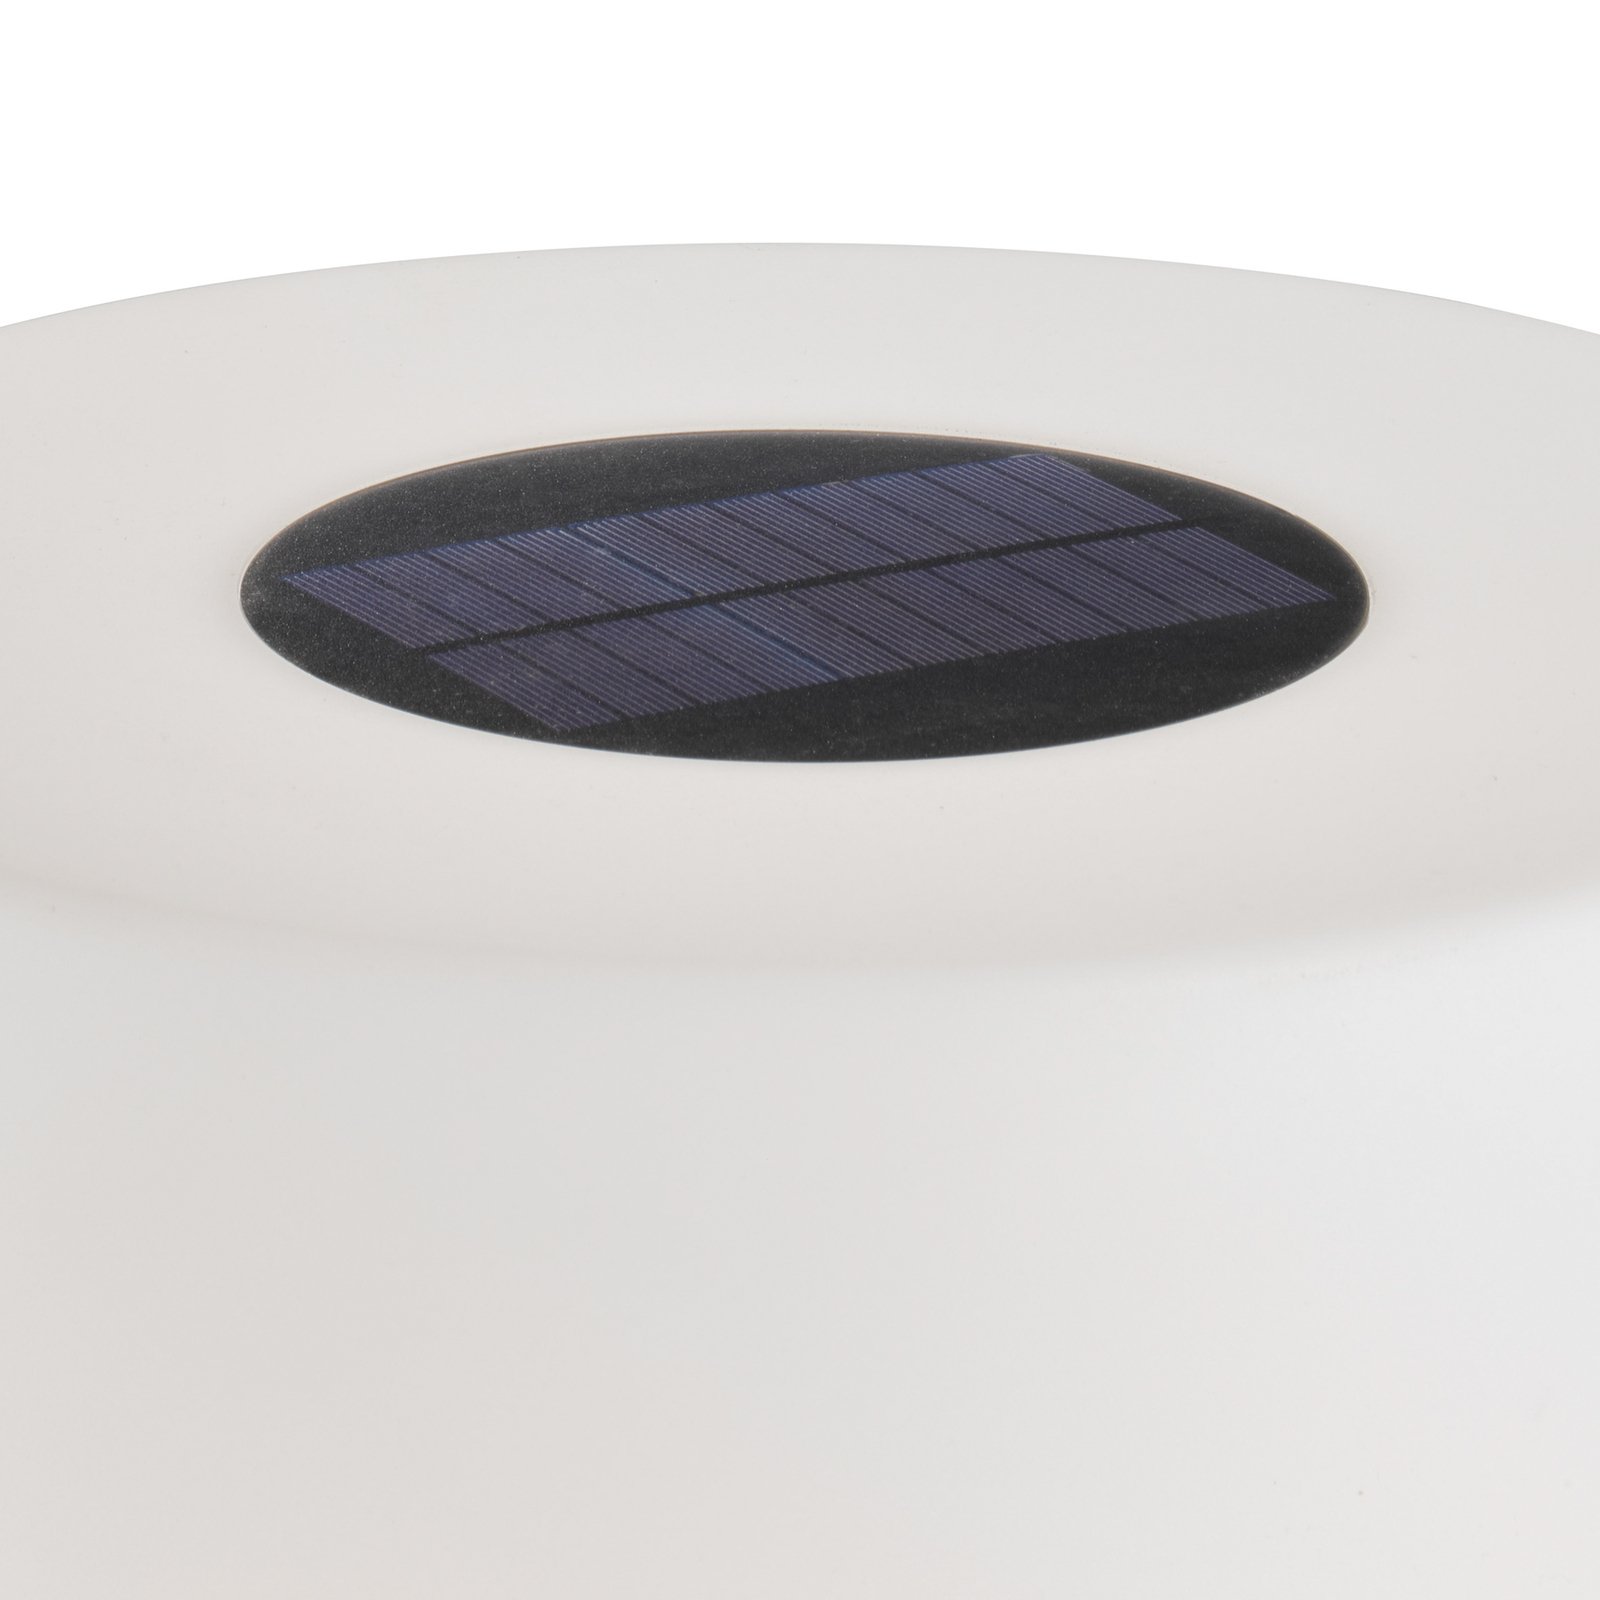 Schöner Wohnen Mina solar LED battery floor lamp